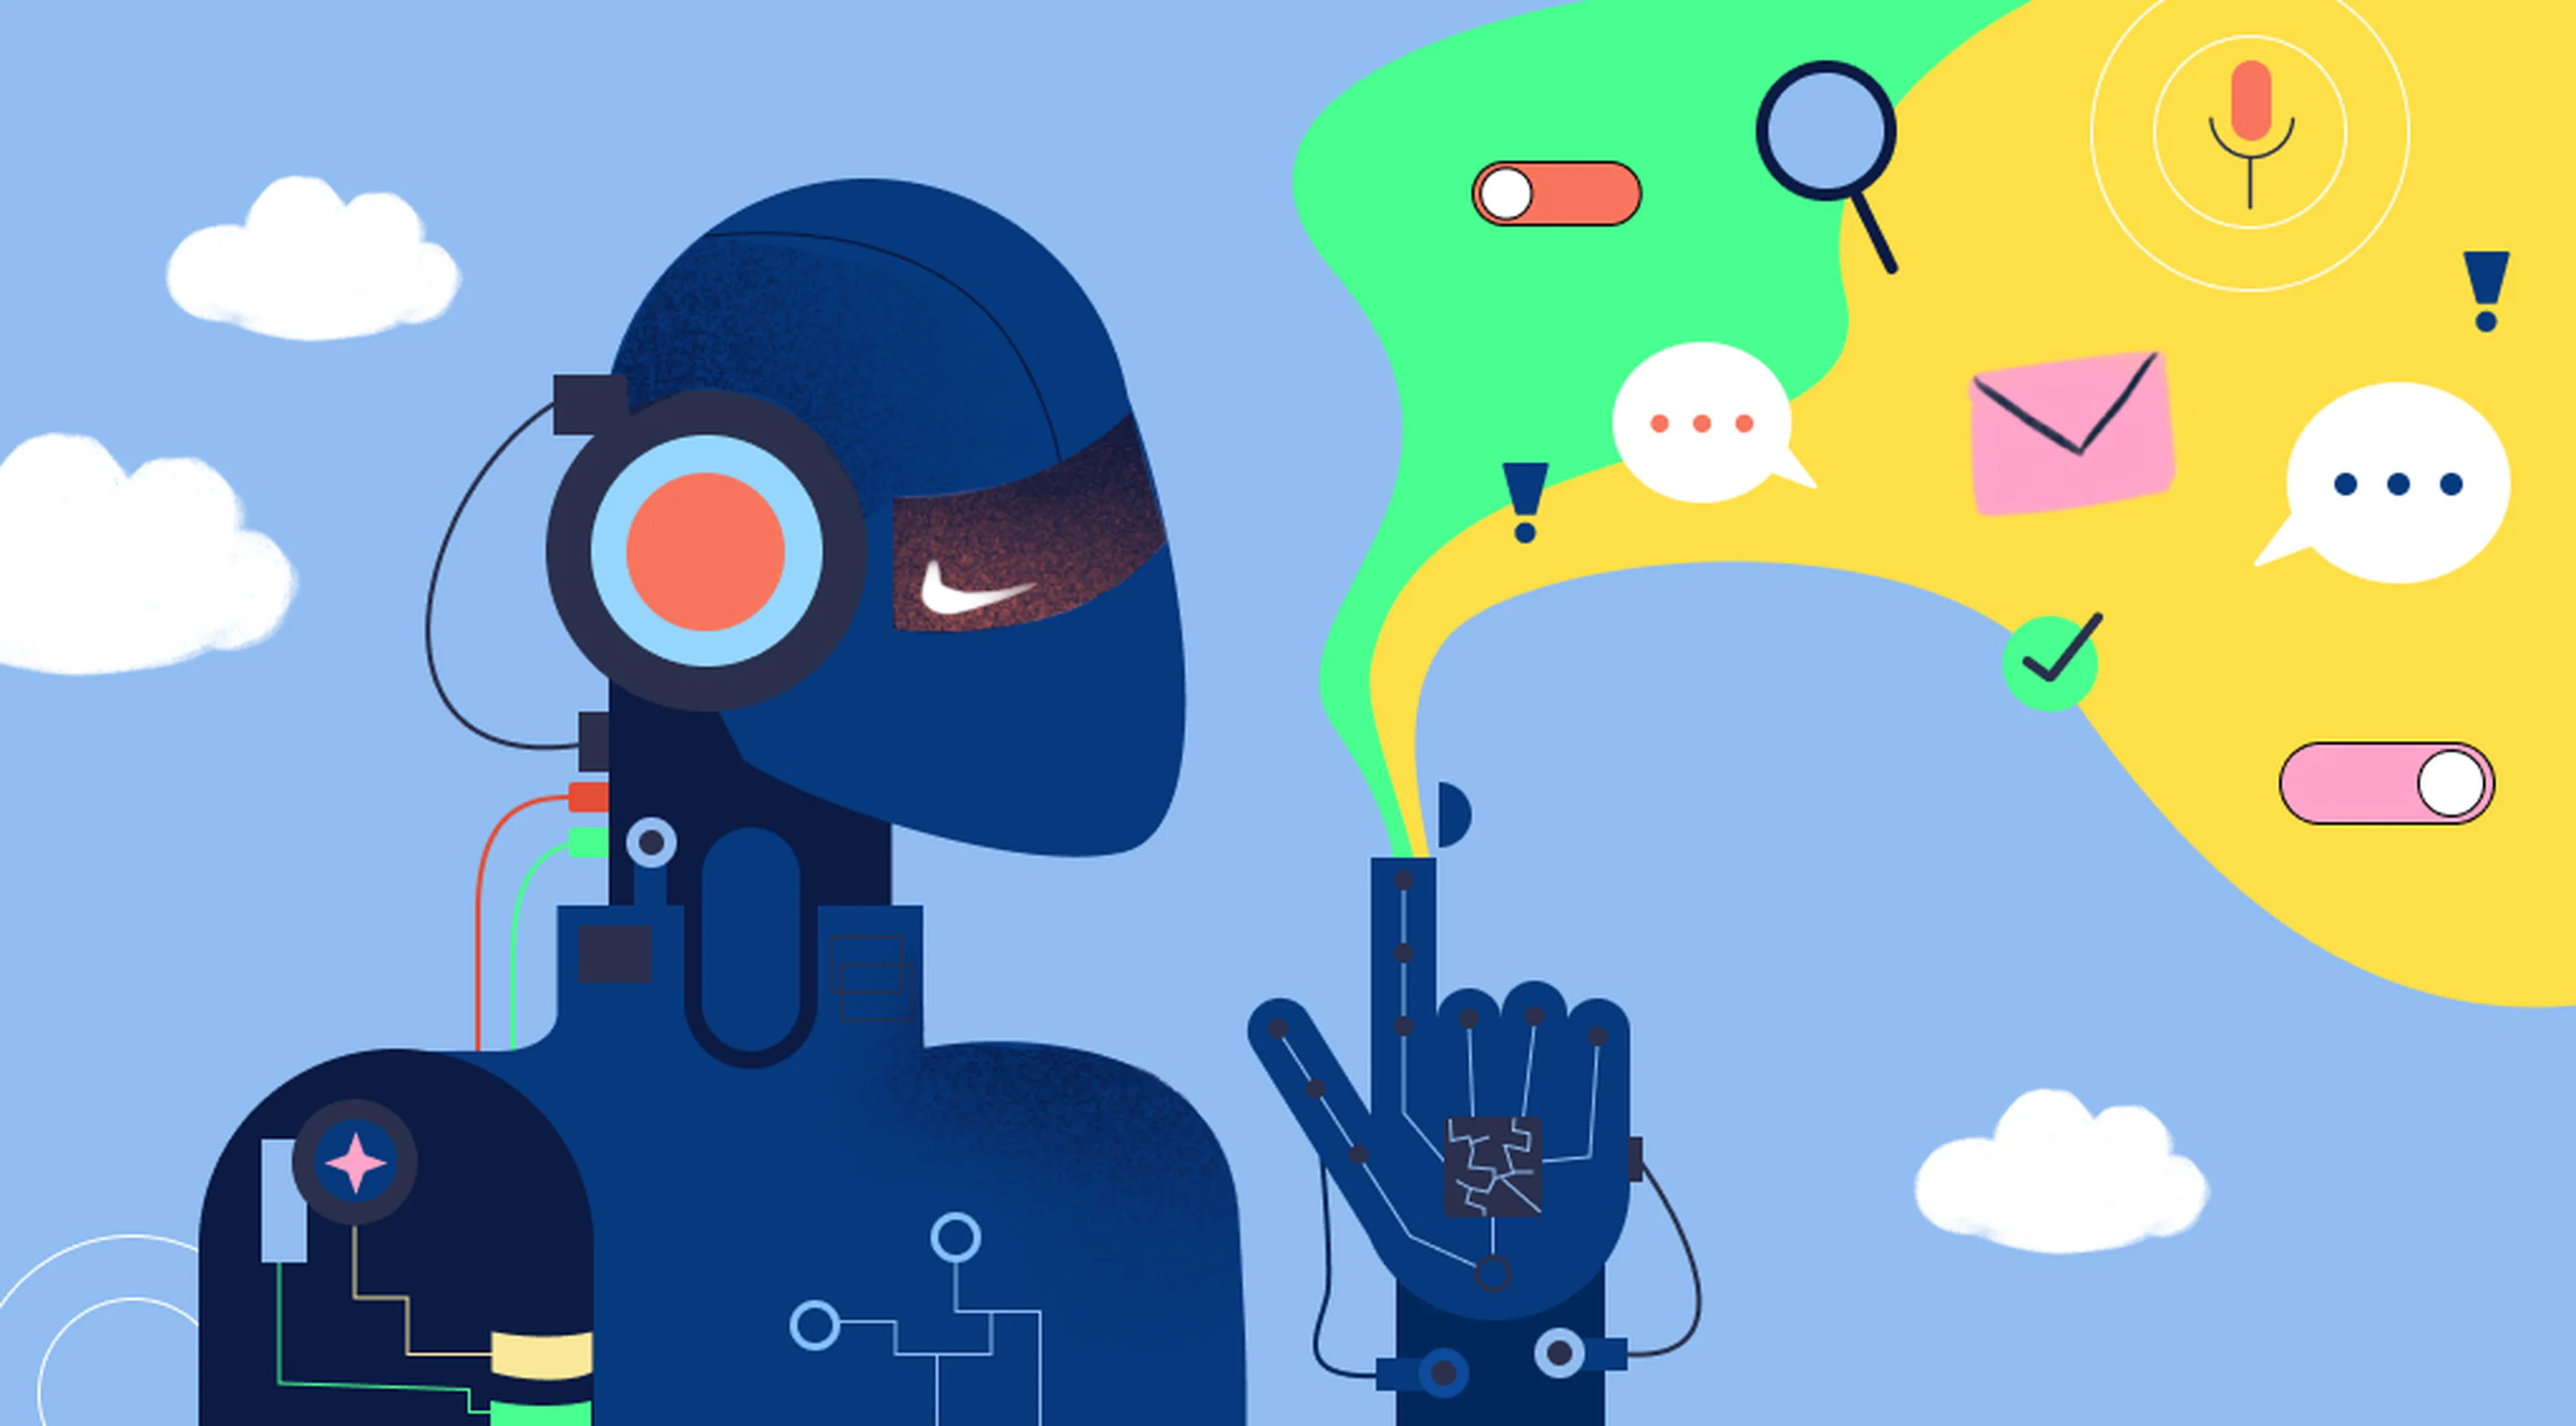 Robot podnoszący palec w górę, z którego wypływa zielono-żółta chmura zawierająca ikony związane z marketingiem